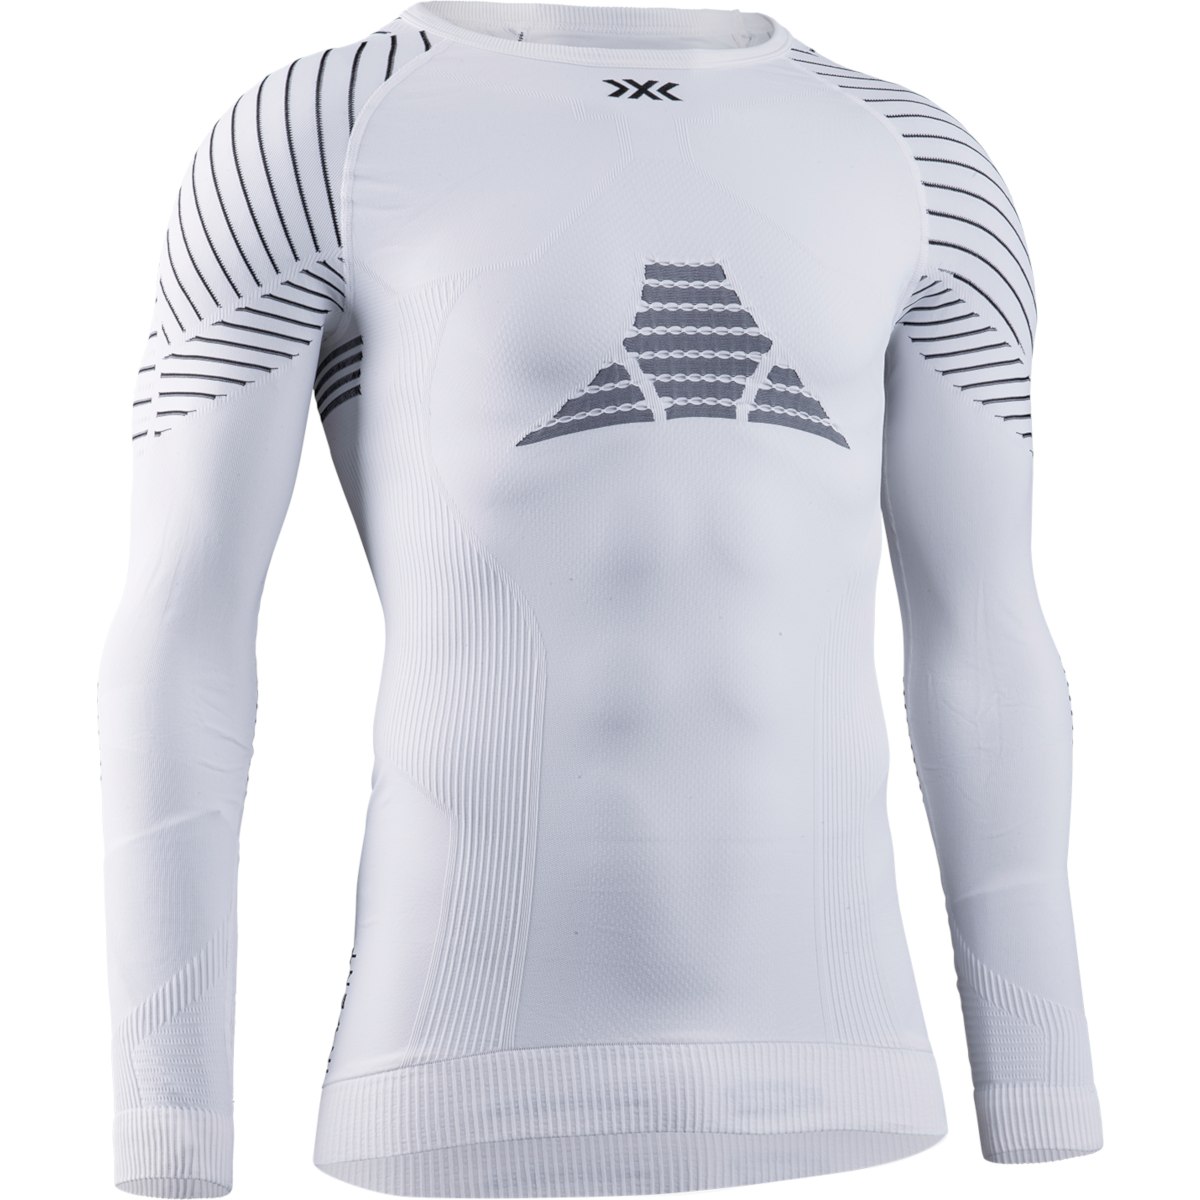 Produktbild von X-Bionic Invent 4.0 Shirt Round Neck Langarm-Unterhemd für Herren - white/black